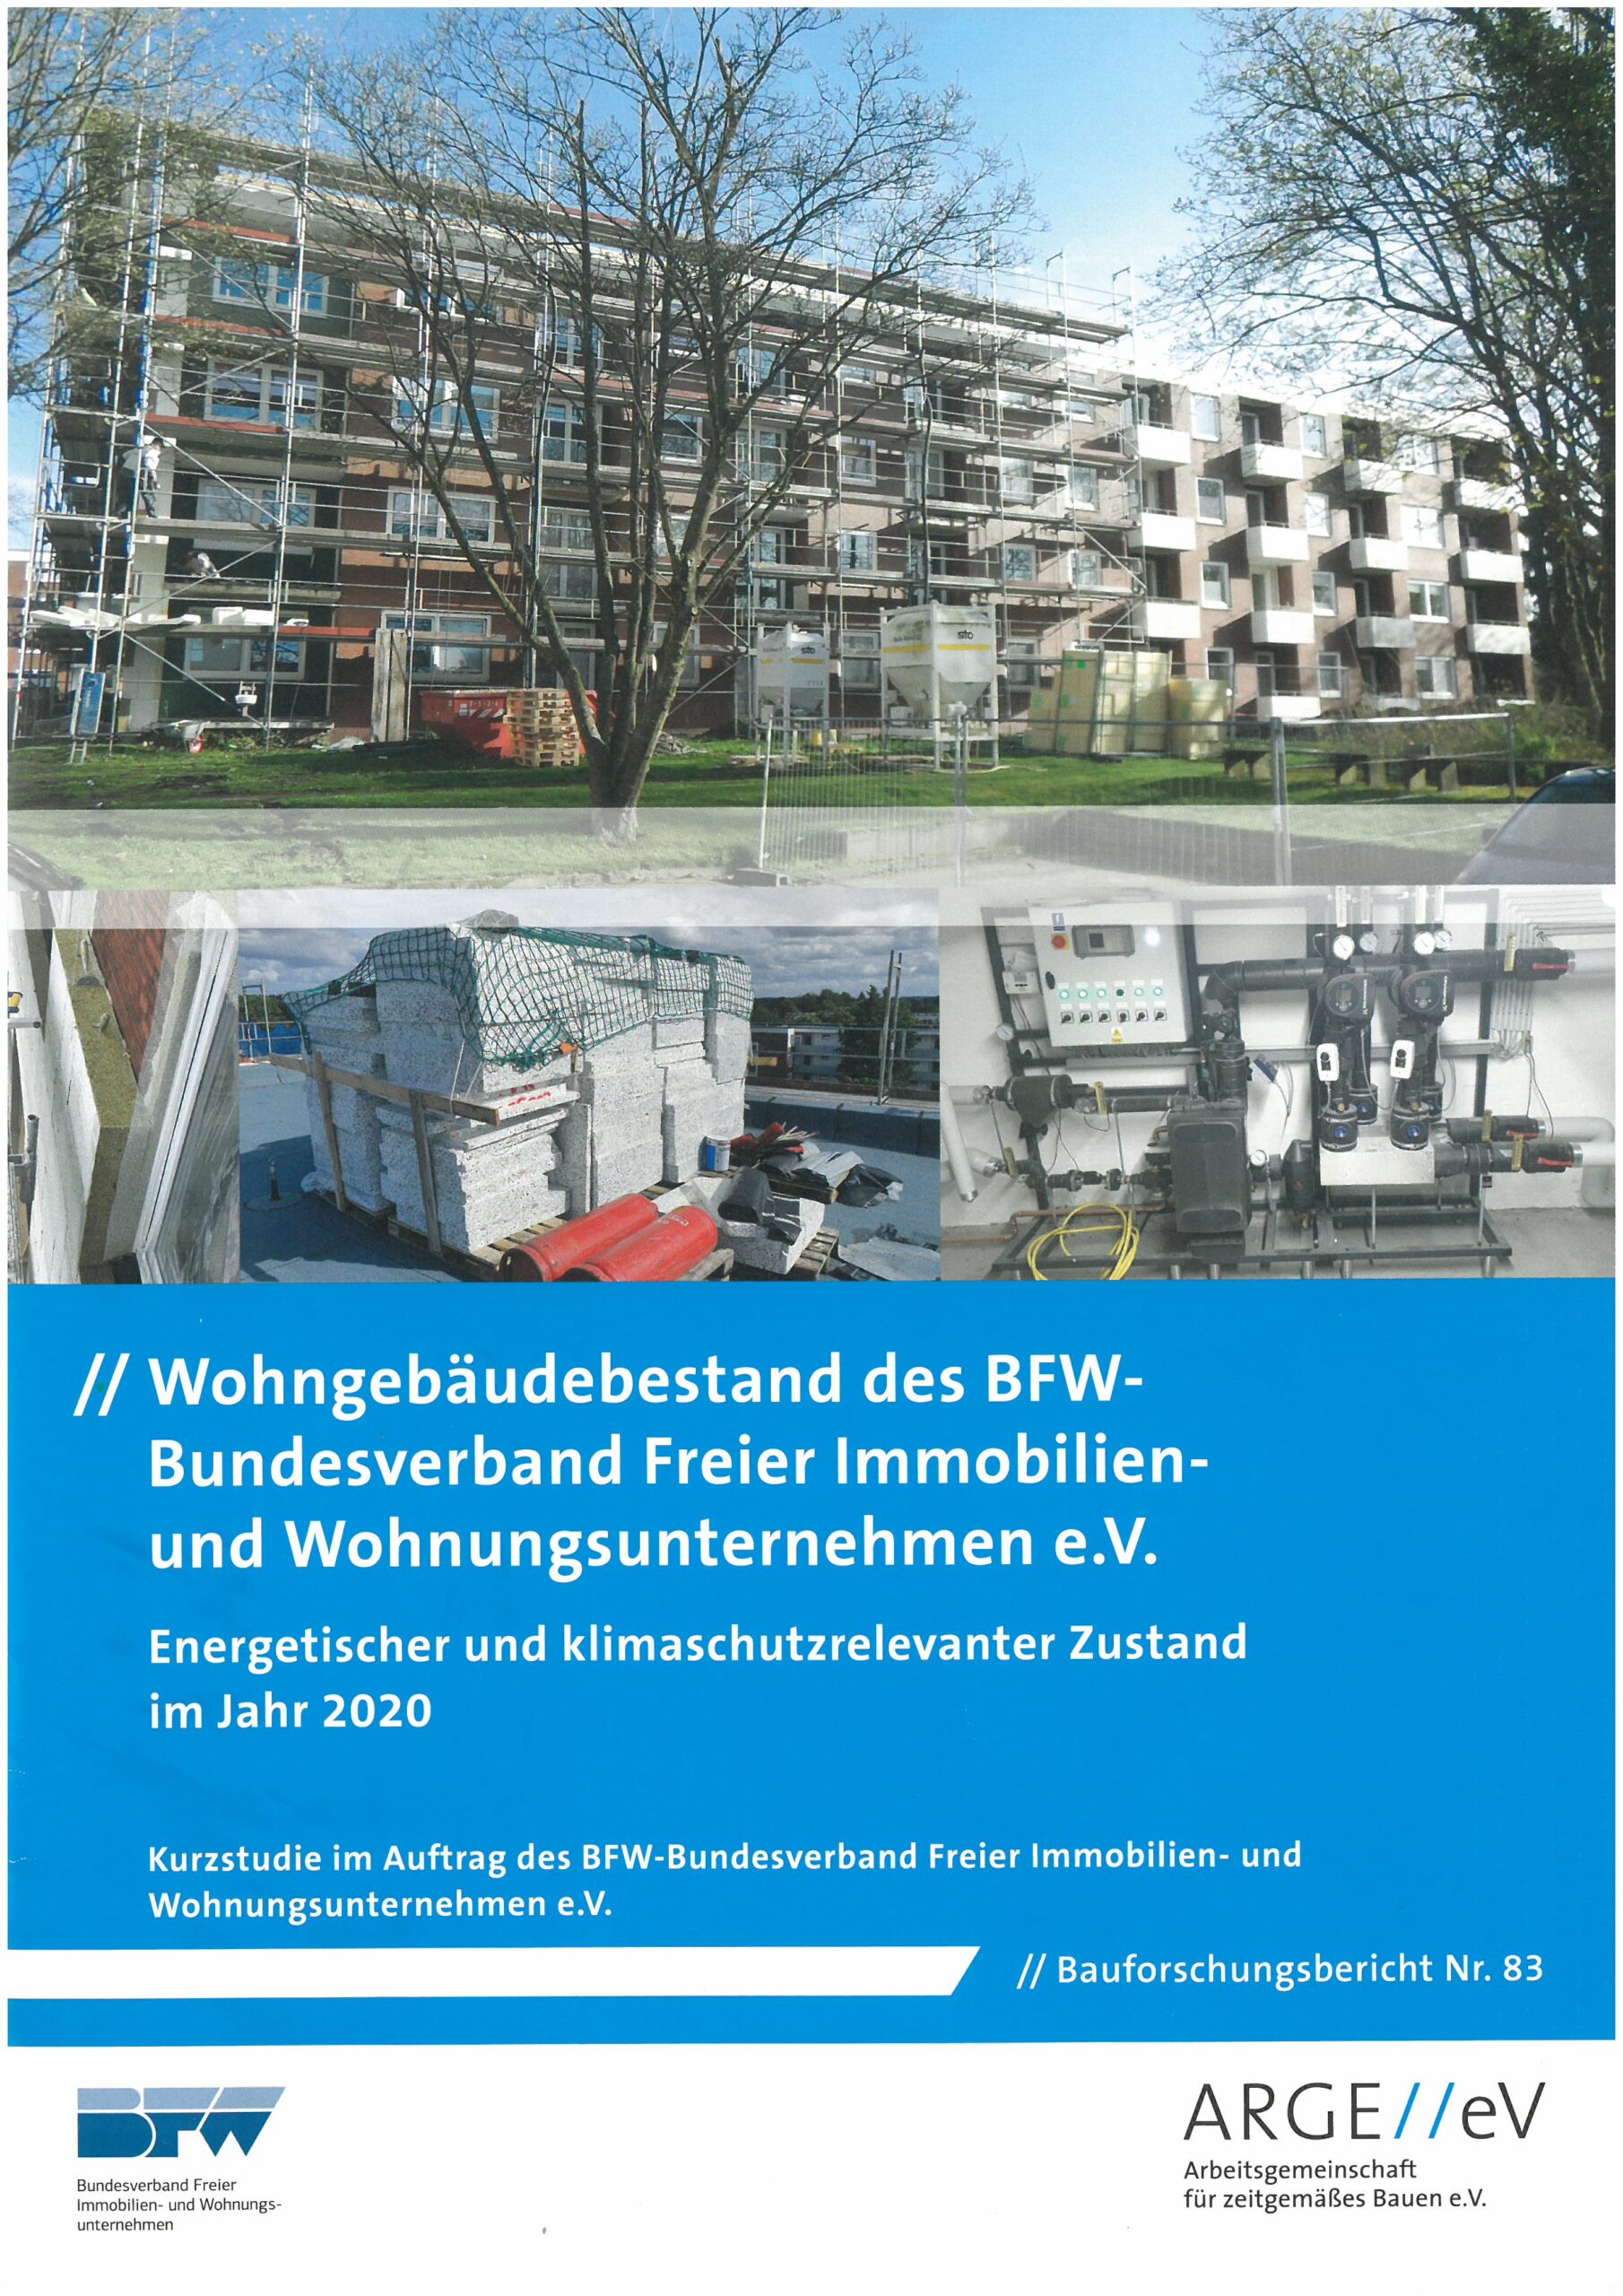 Wohngebäudebestand des BFW-Bundesverband Freier Immobilien- und Wohnungsunternehmen e.V.